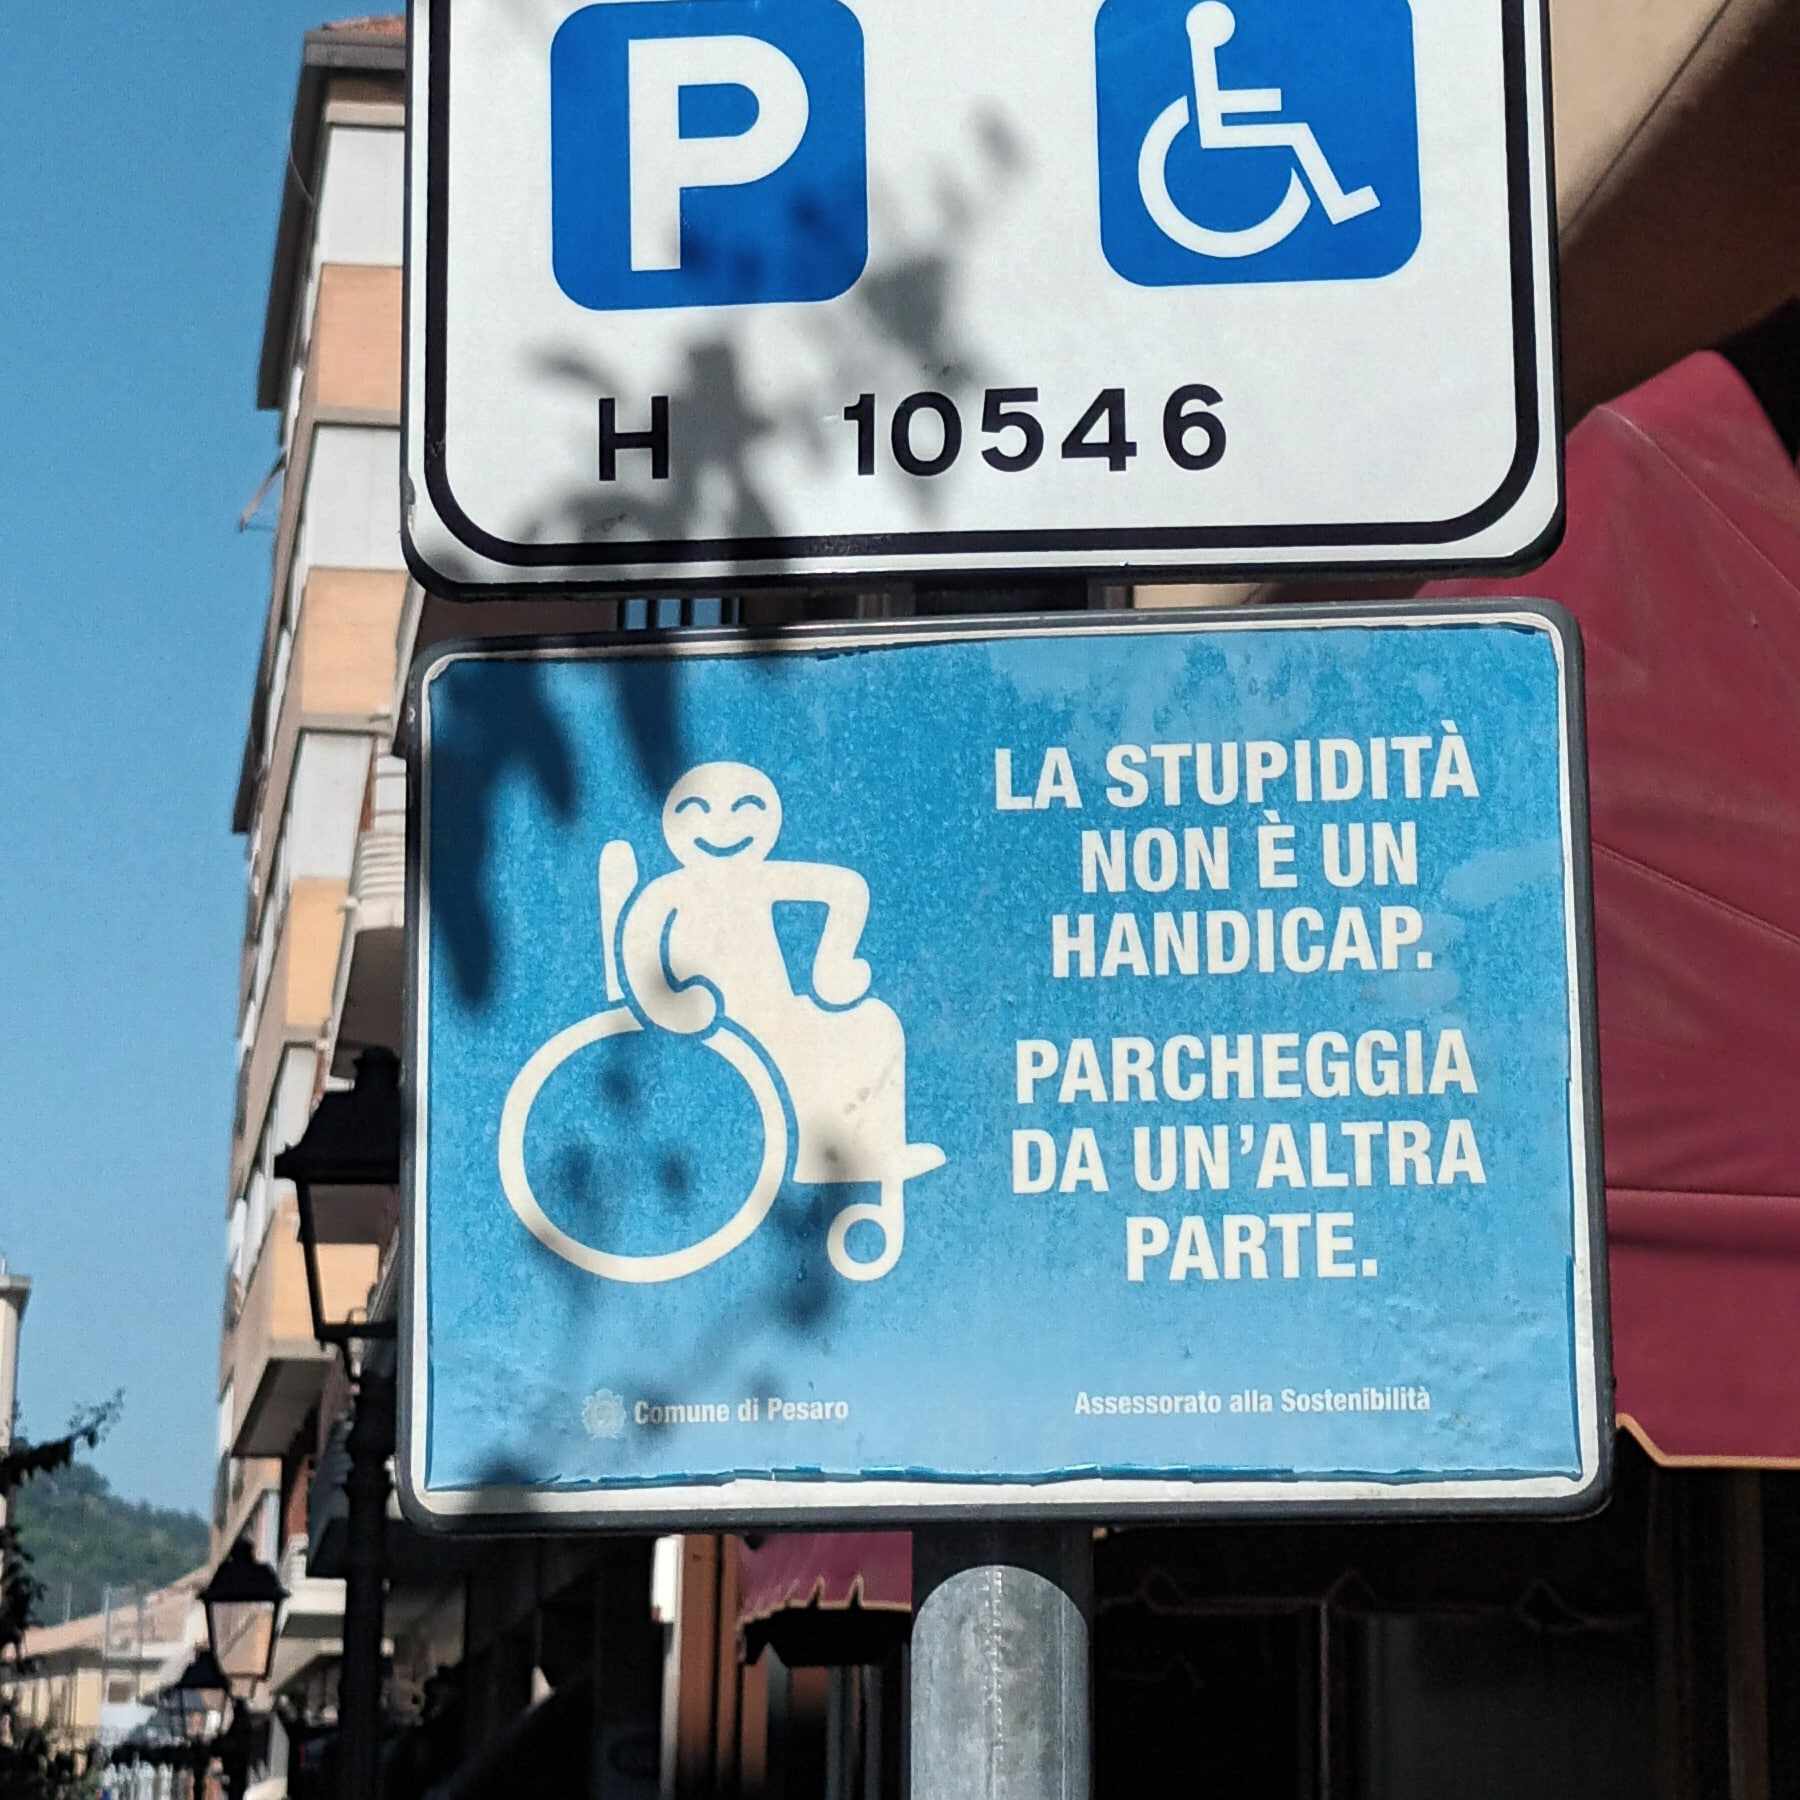 Az utcán egy parkolótáblát látunk. A hivatalos akadálymentes parkolót jelző tábla alatt egy vicces tábla egy nevetős kerekesszékes ikonnal és a szöveggel olaszul: "A hülyeség nem fogyatékosság. menj és parkolj máshova"